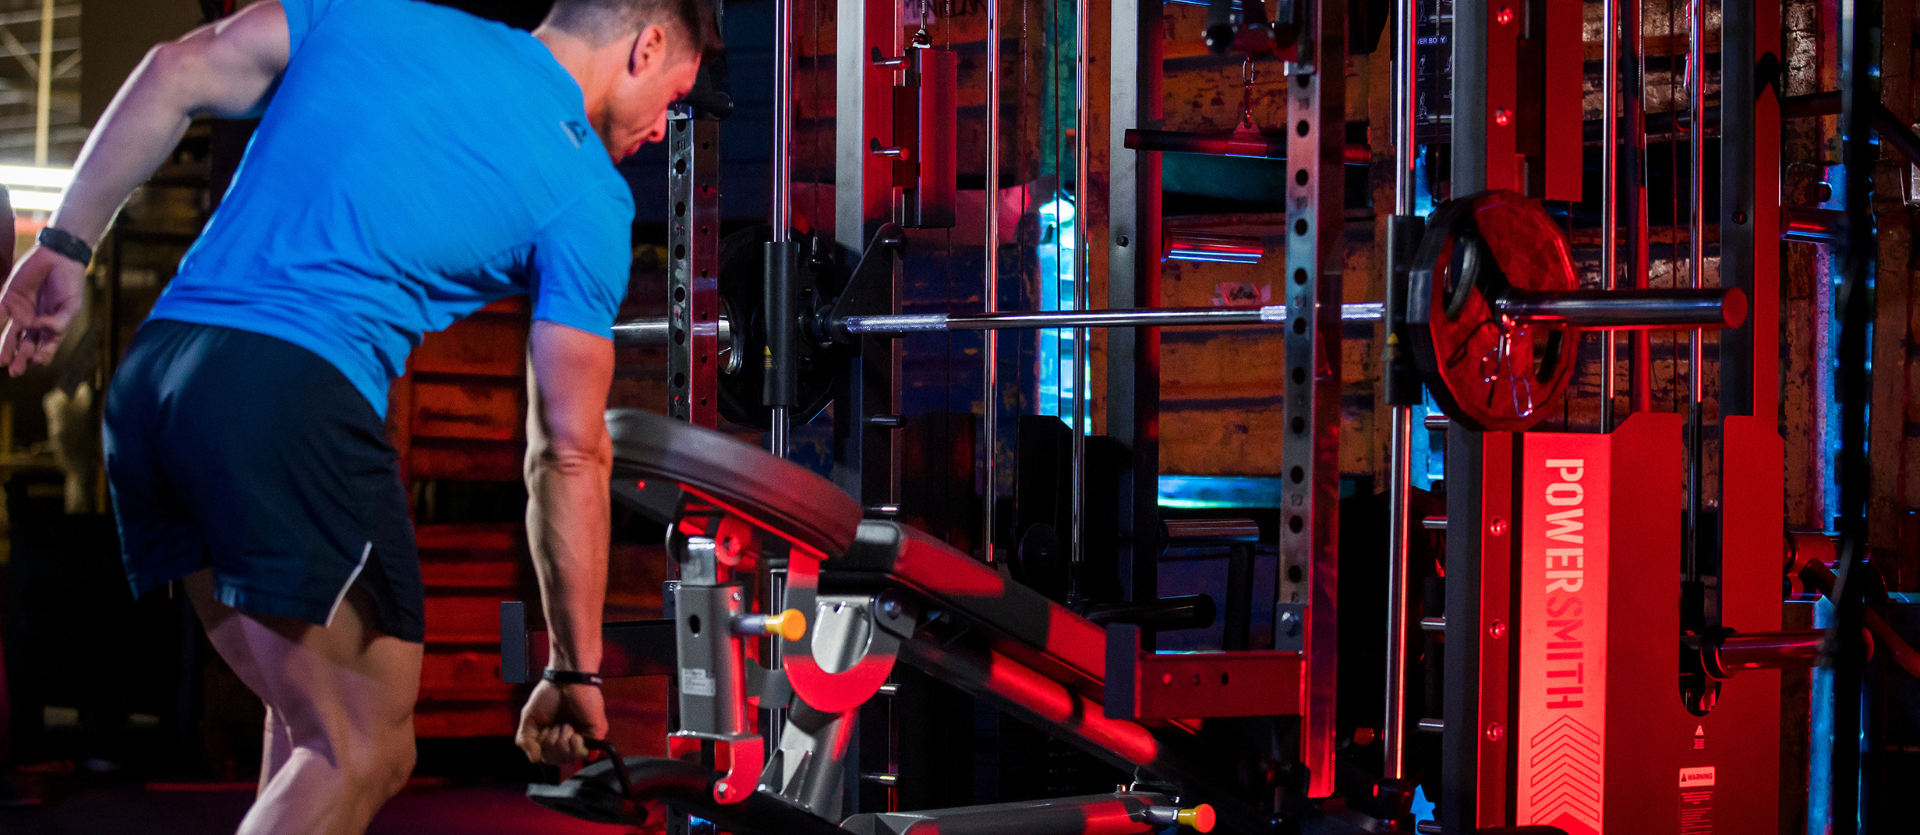 Máquinas de gimnasio y ejercicio BH Fitness Máquinas de musculación  Multiestación